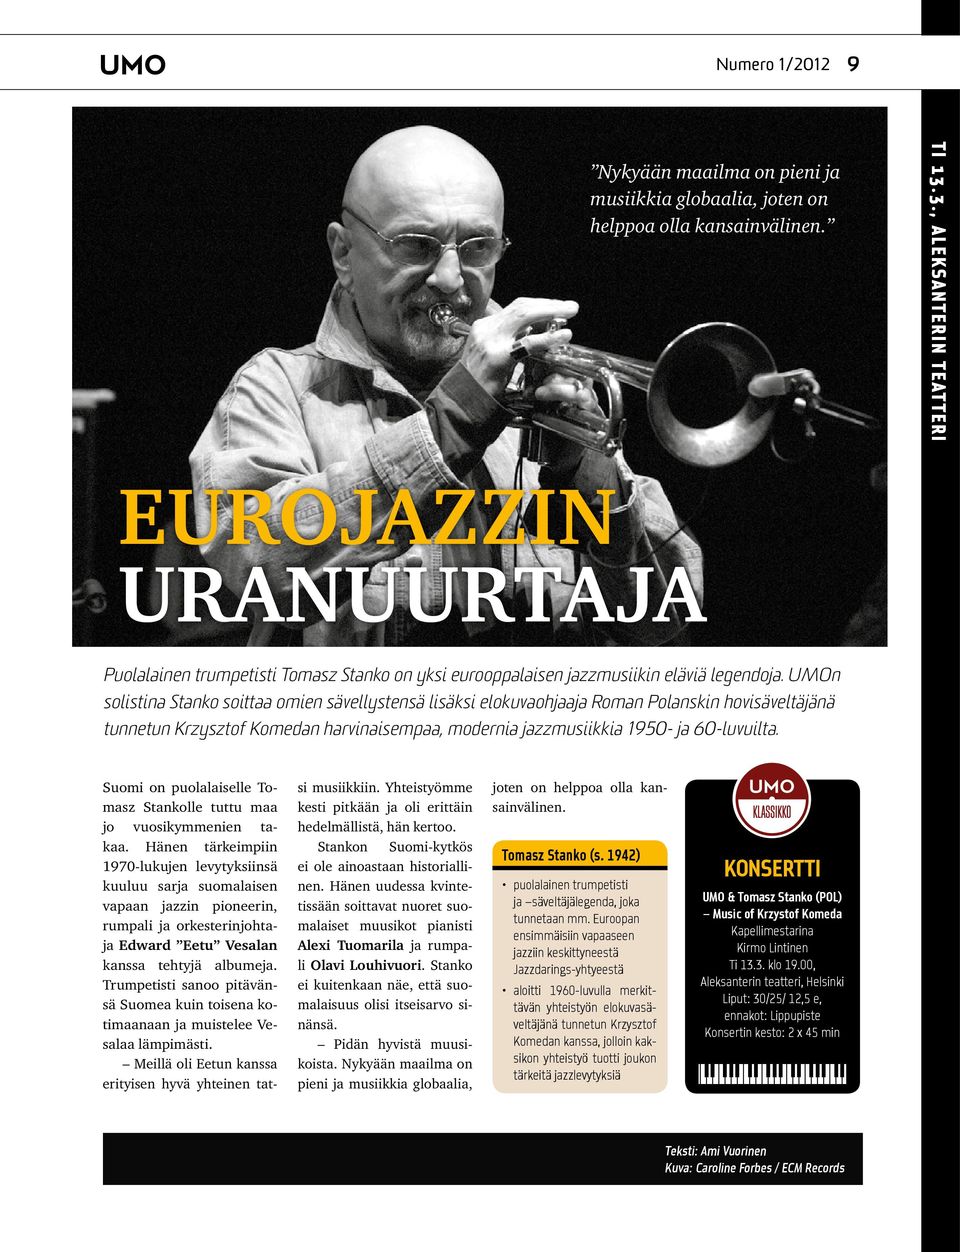 UMOn solistina Stanko soittaa omien sävellystensä lisäksi elokuvaohjaaja Roman Polanskin hovisäveltäjänä tunnetun Krzysztof Komedan harvinaisempaa, modernia jazzmusiikkia 1950- ja 60-luvuilta.